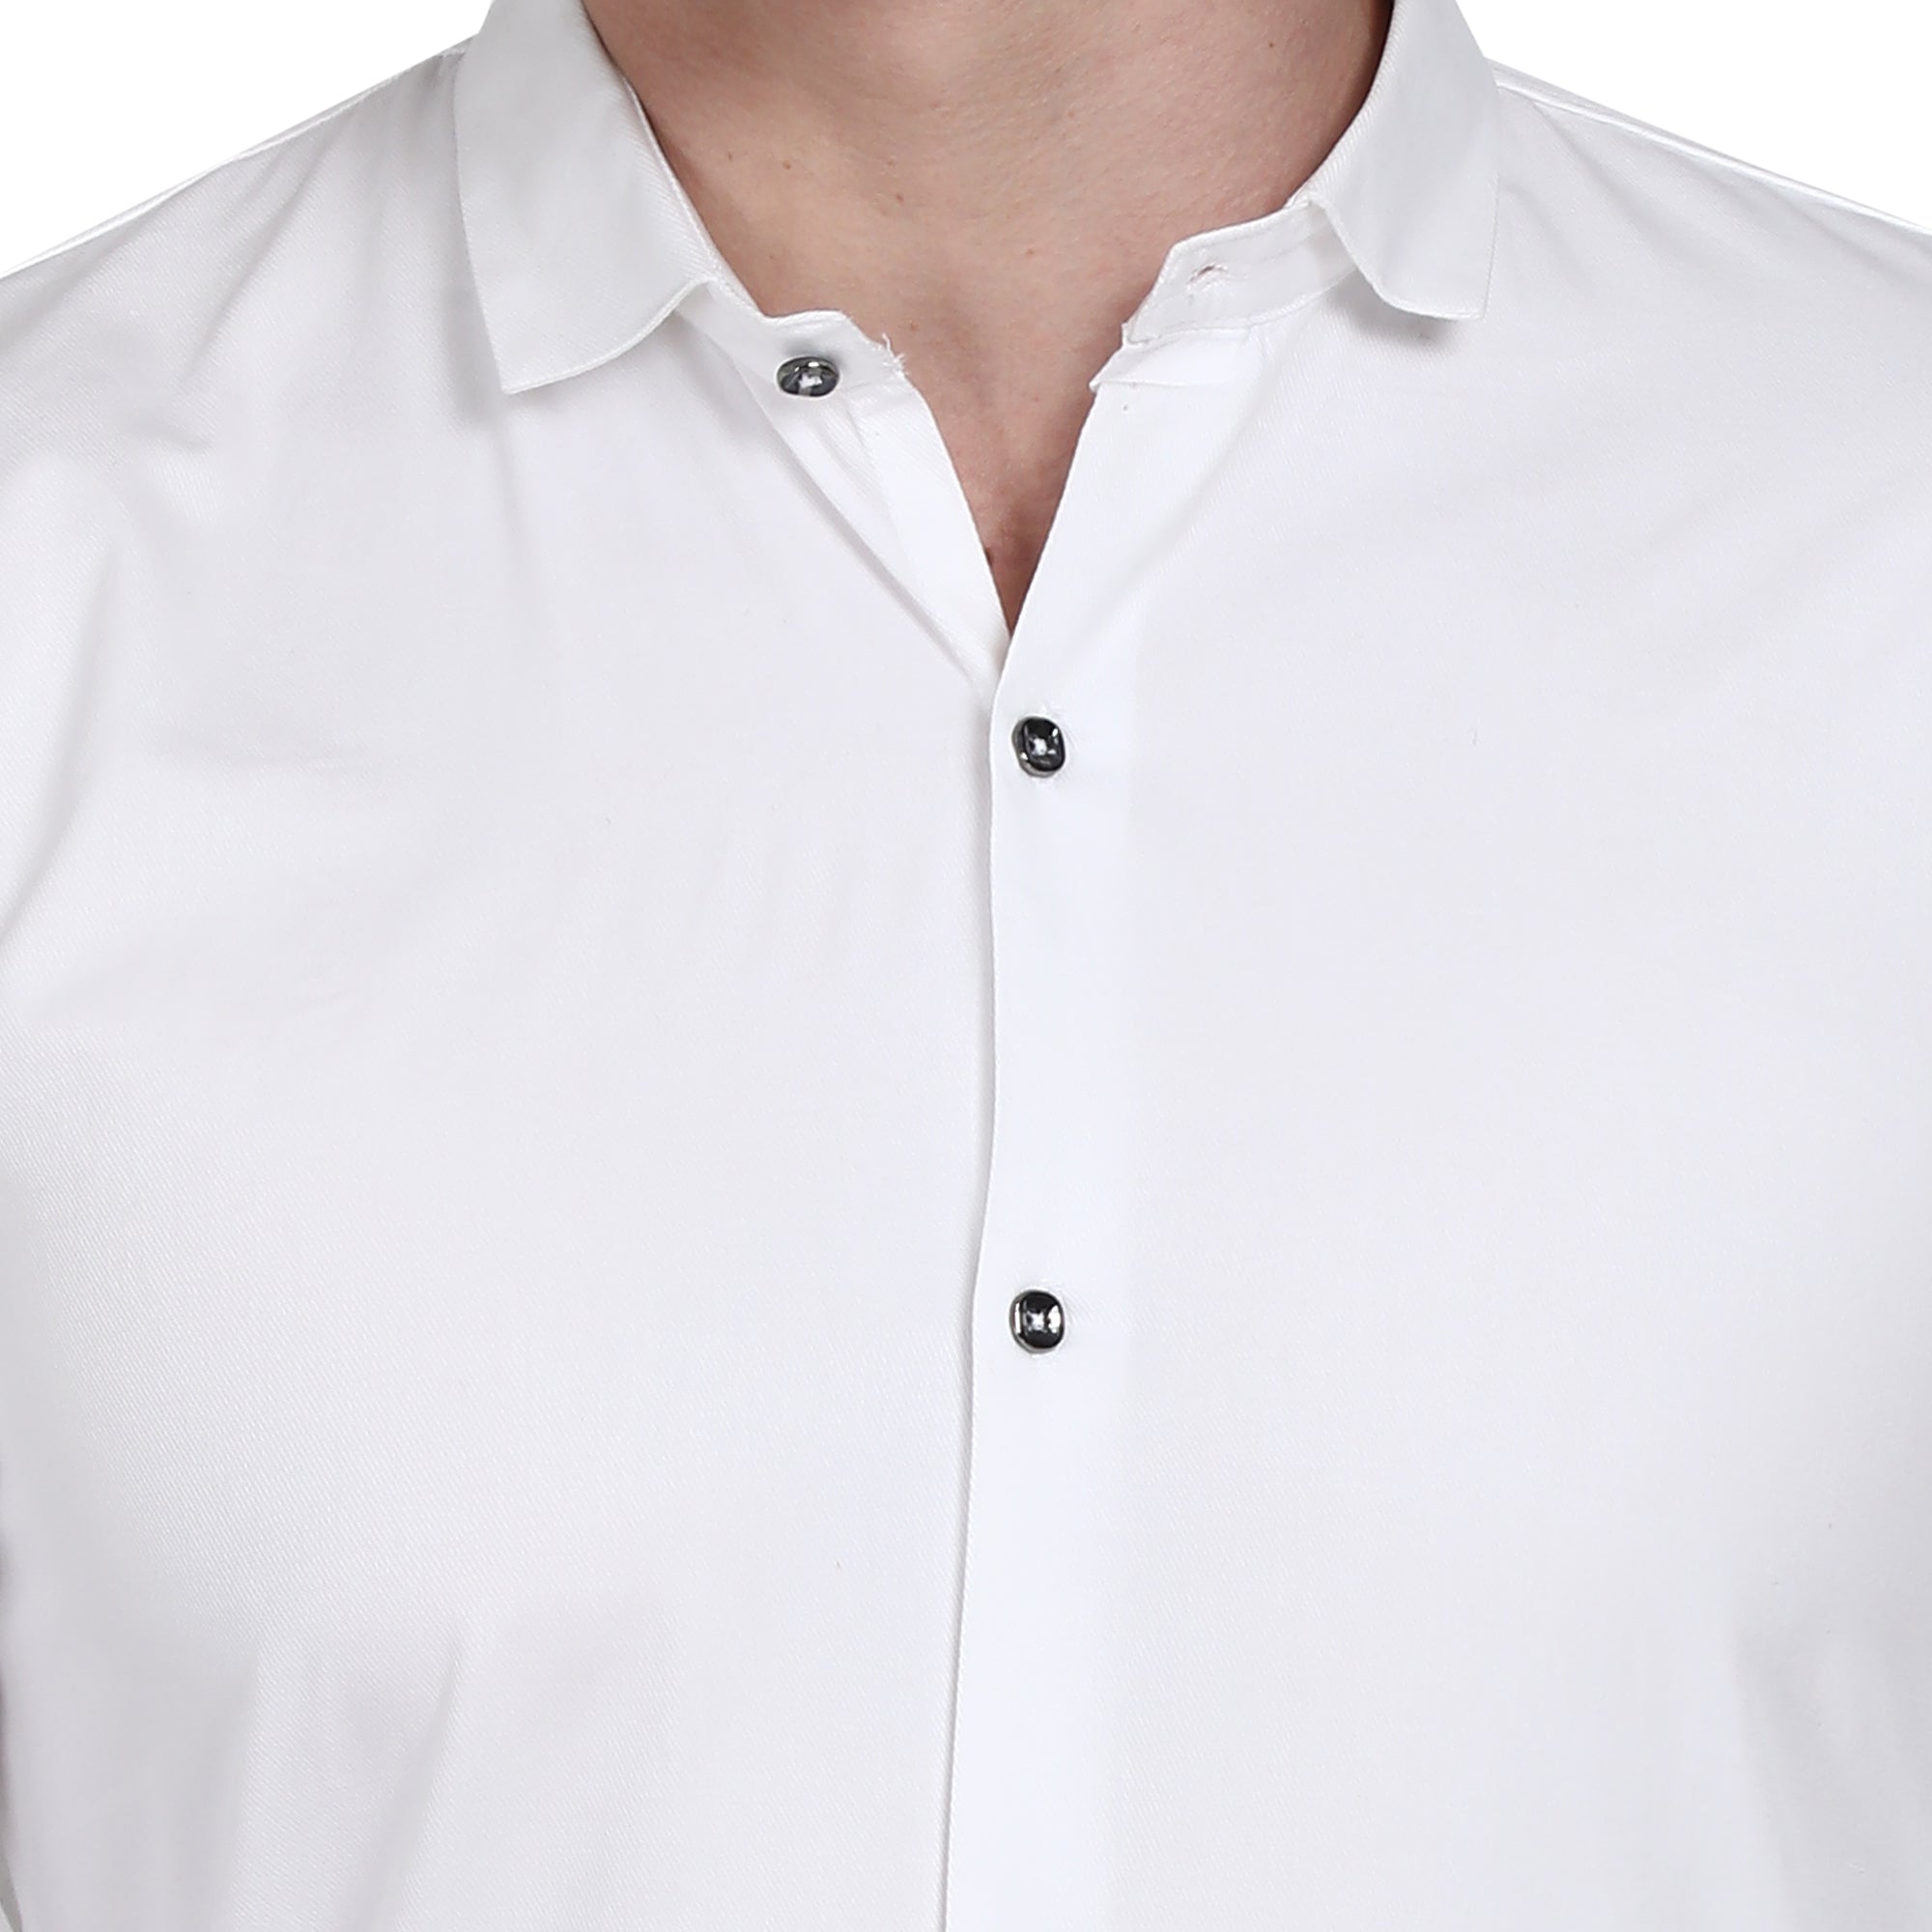 Men Casual Cotton Shirts - White Colour